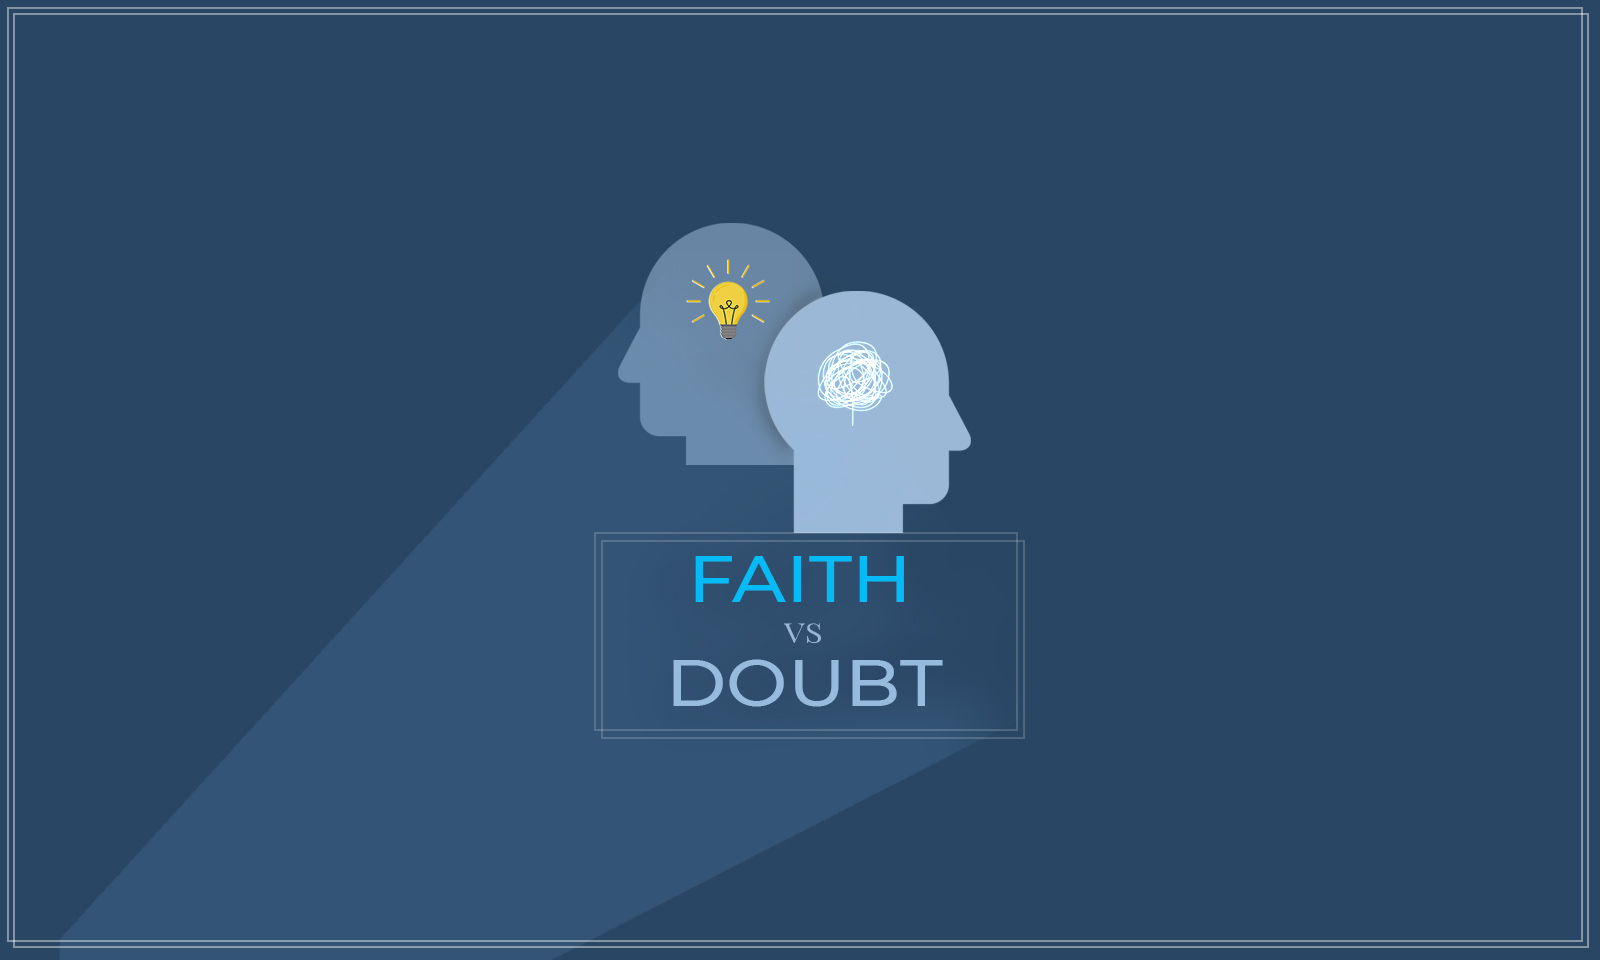 FAITH versus DOUBT